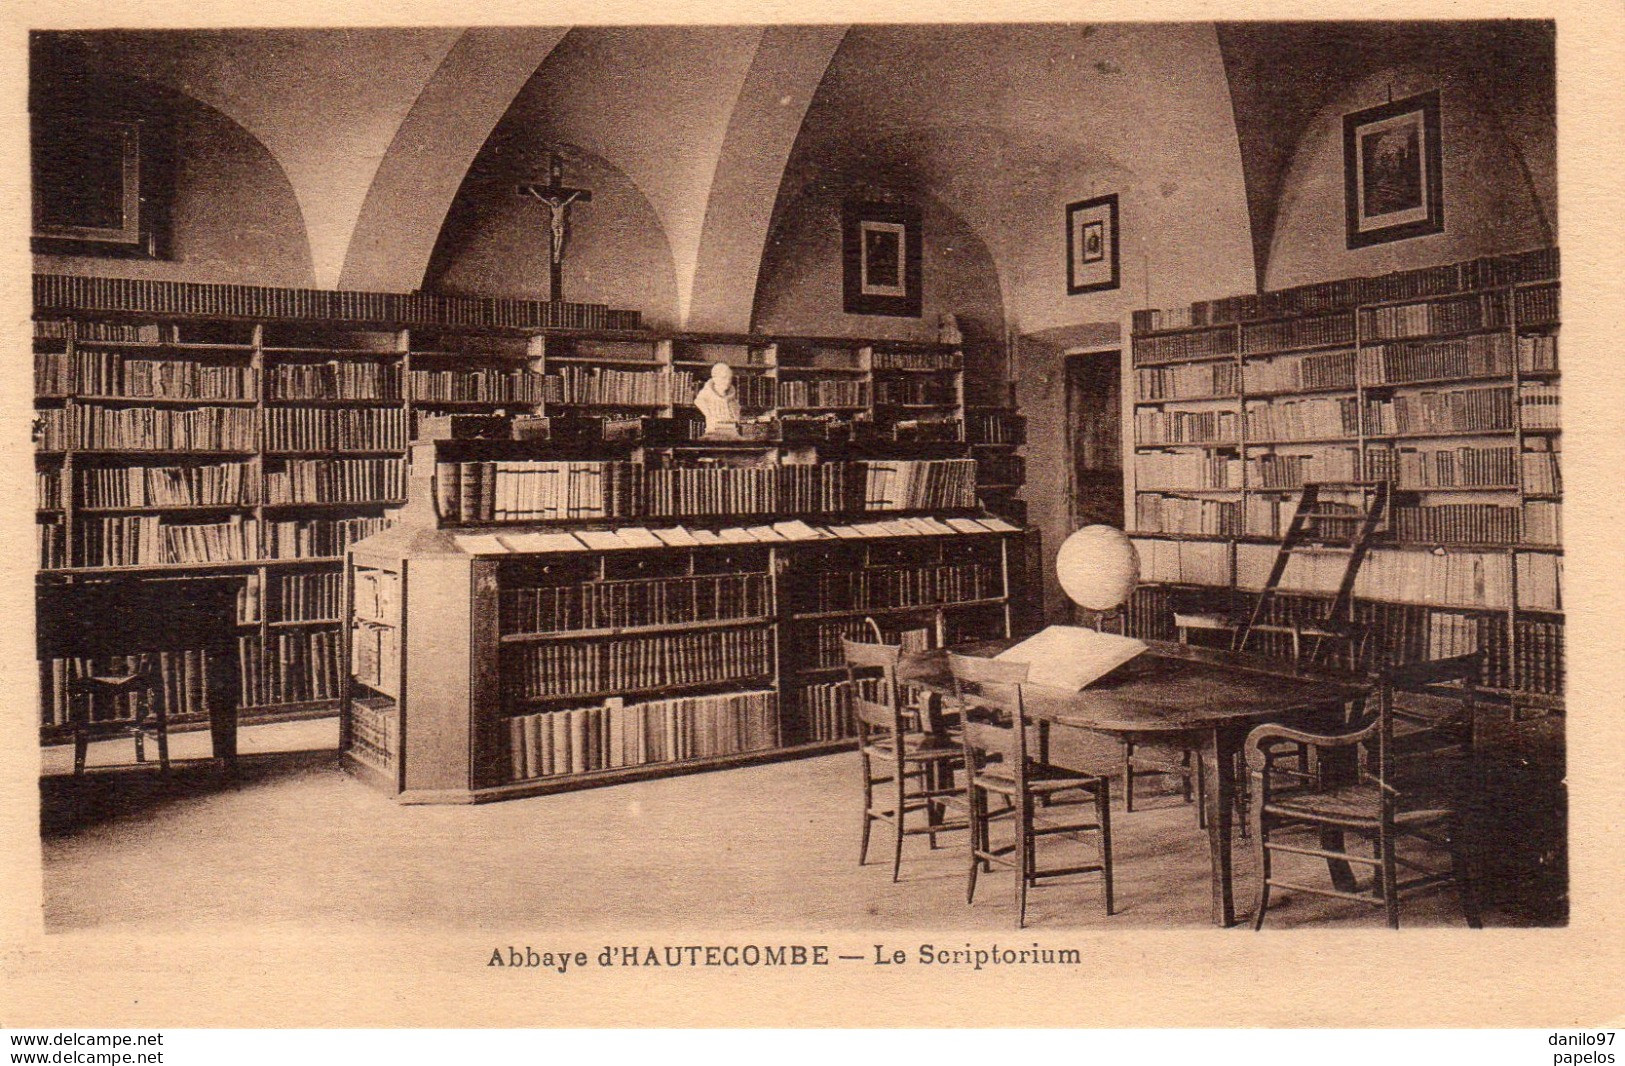 Cartolina Nuova Abbazia Di Altacomba - Rhône-Alpes